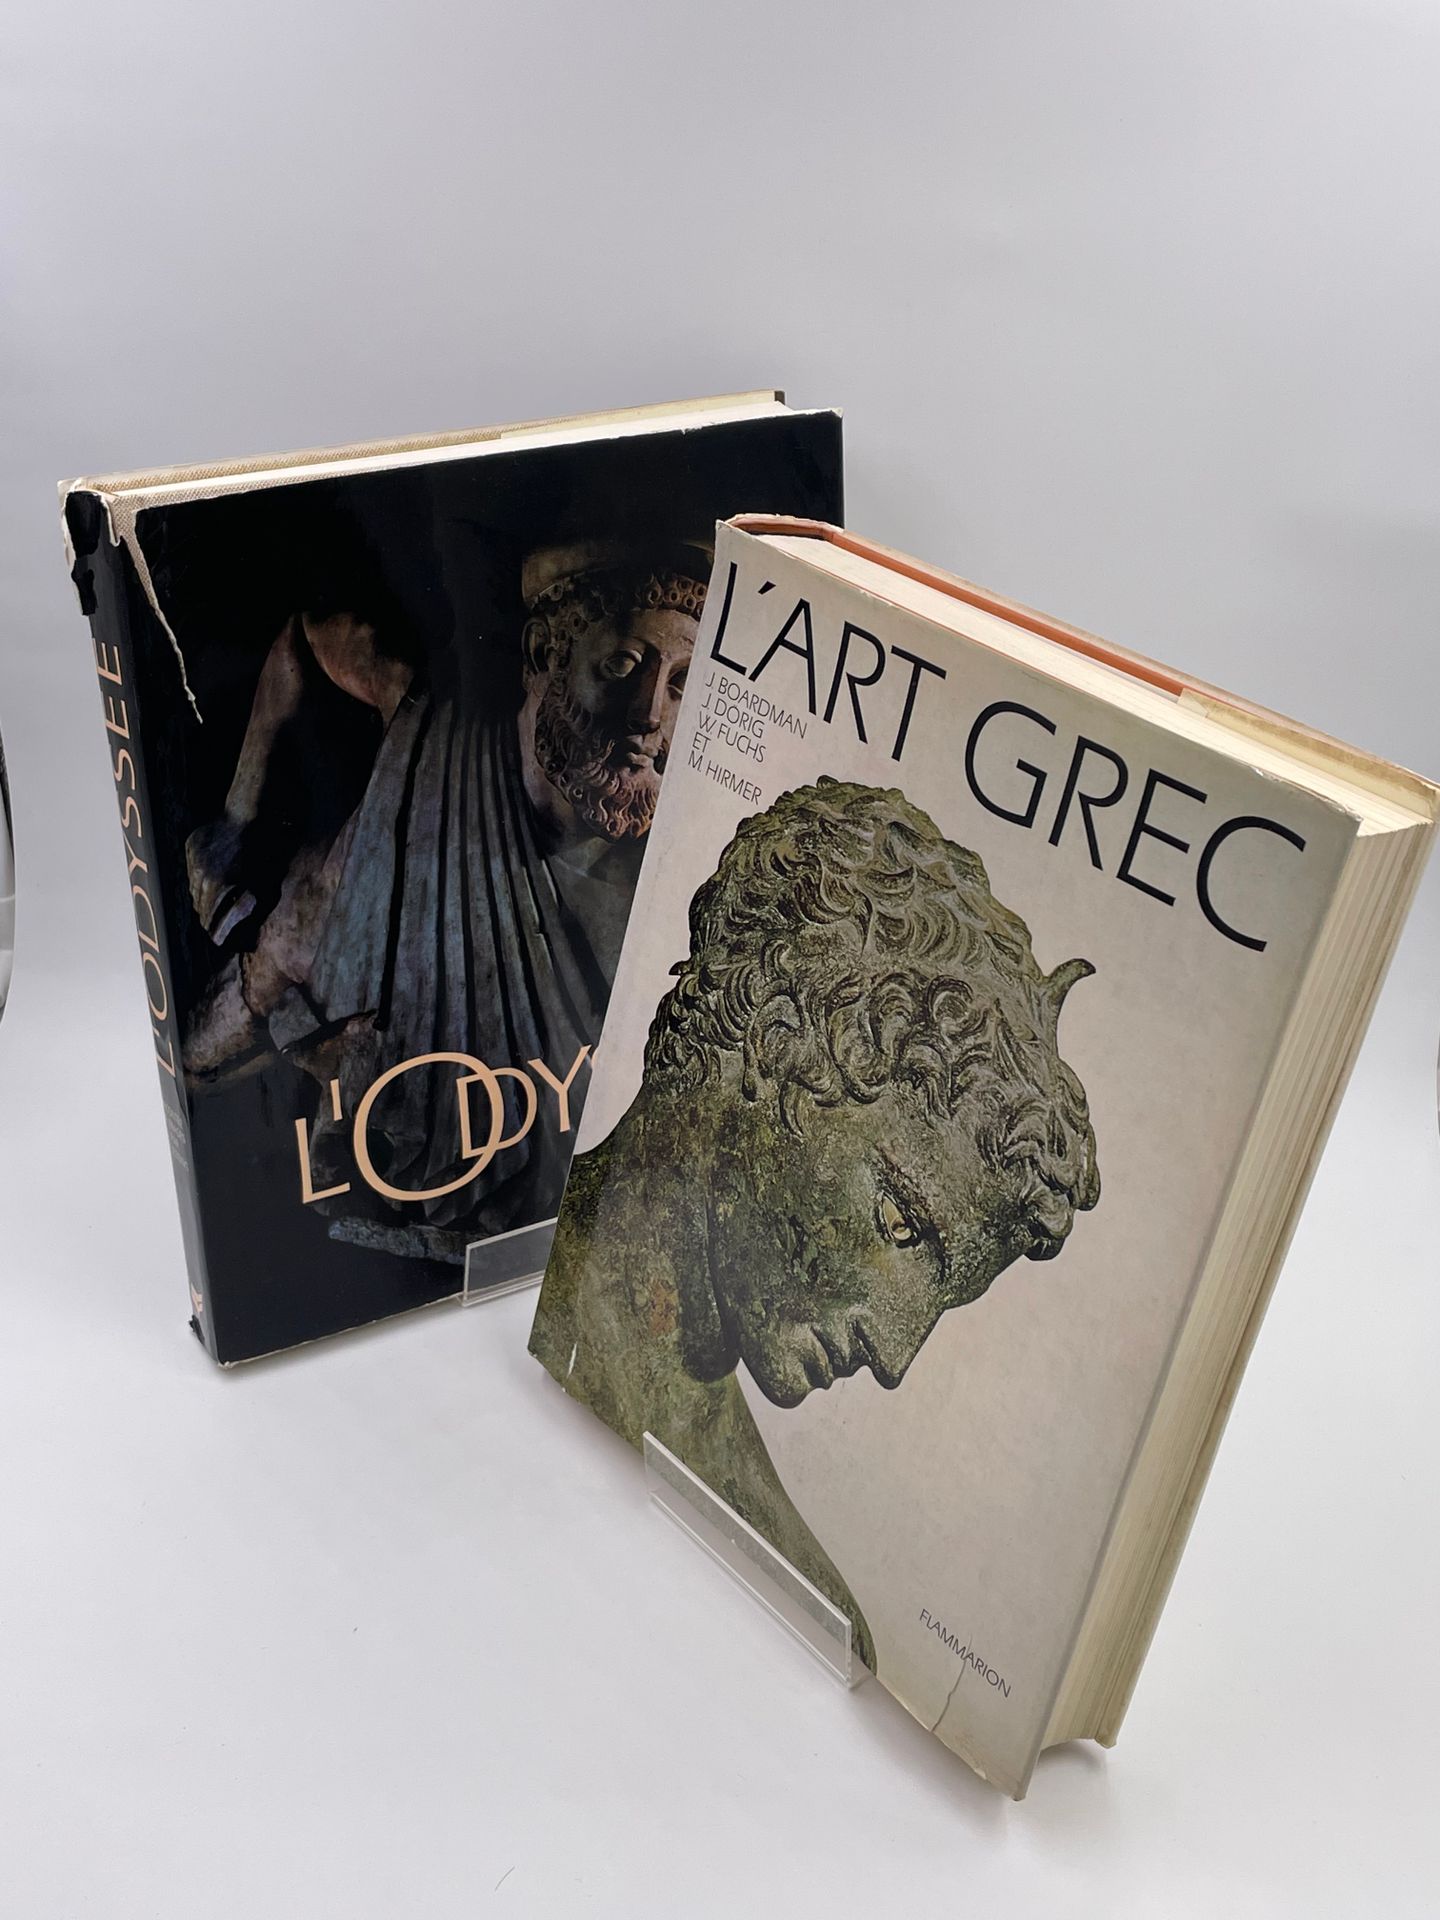 Null 2 Bände : 

- "L'ART GREC" J.Boardman, J.Drig, W Fuchs, M.Hirmer, Edition F&hellip;